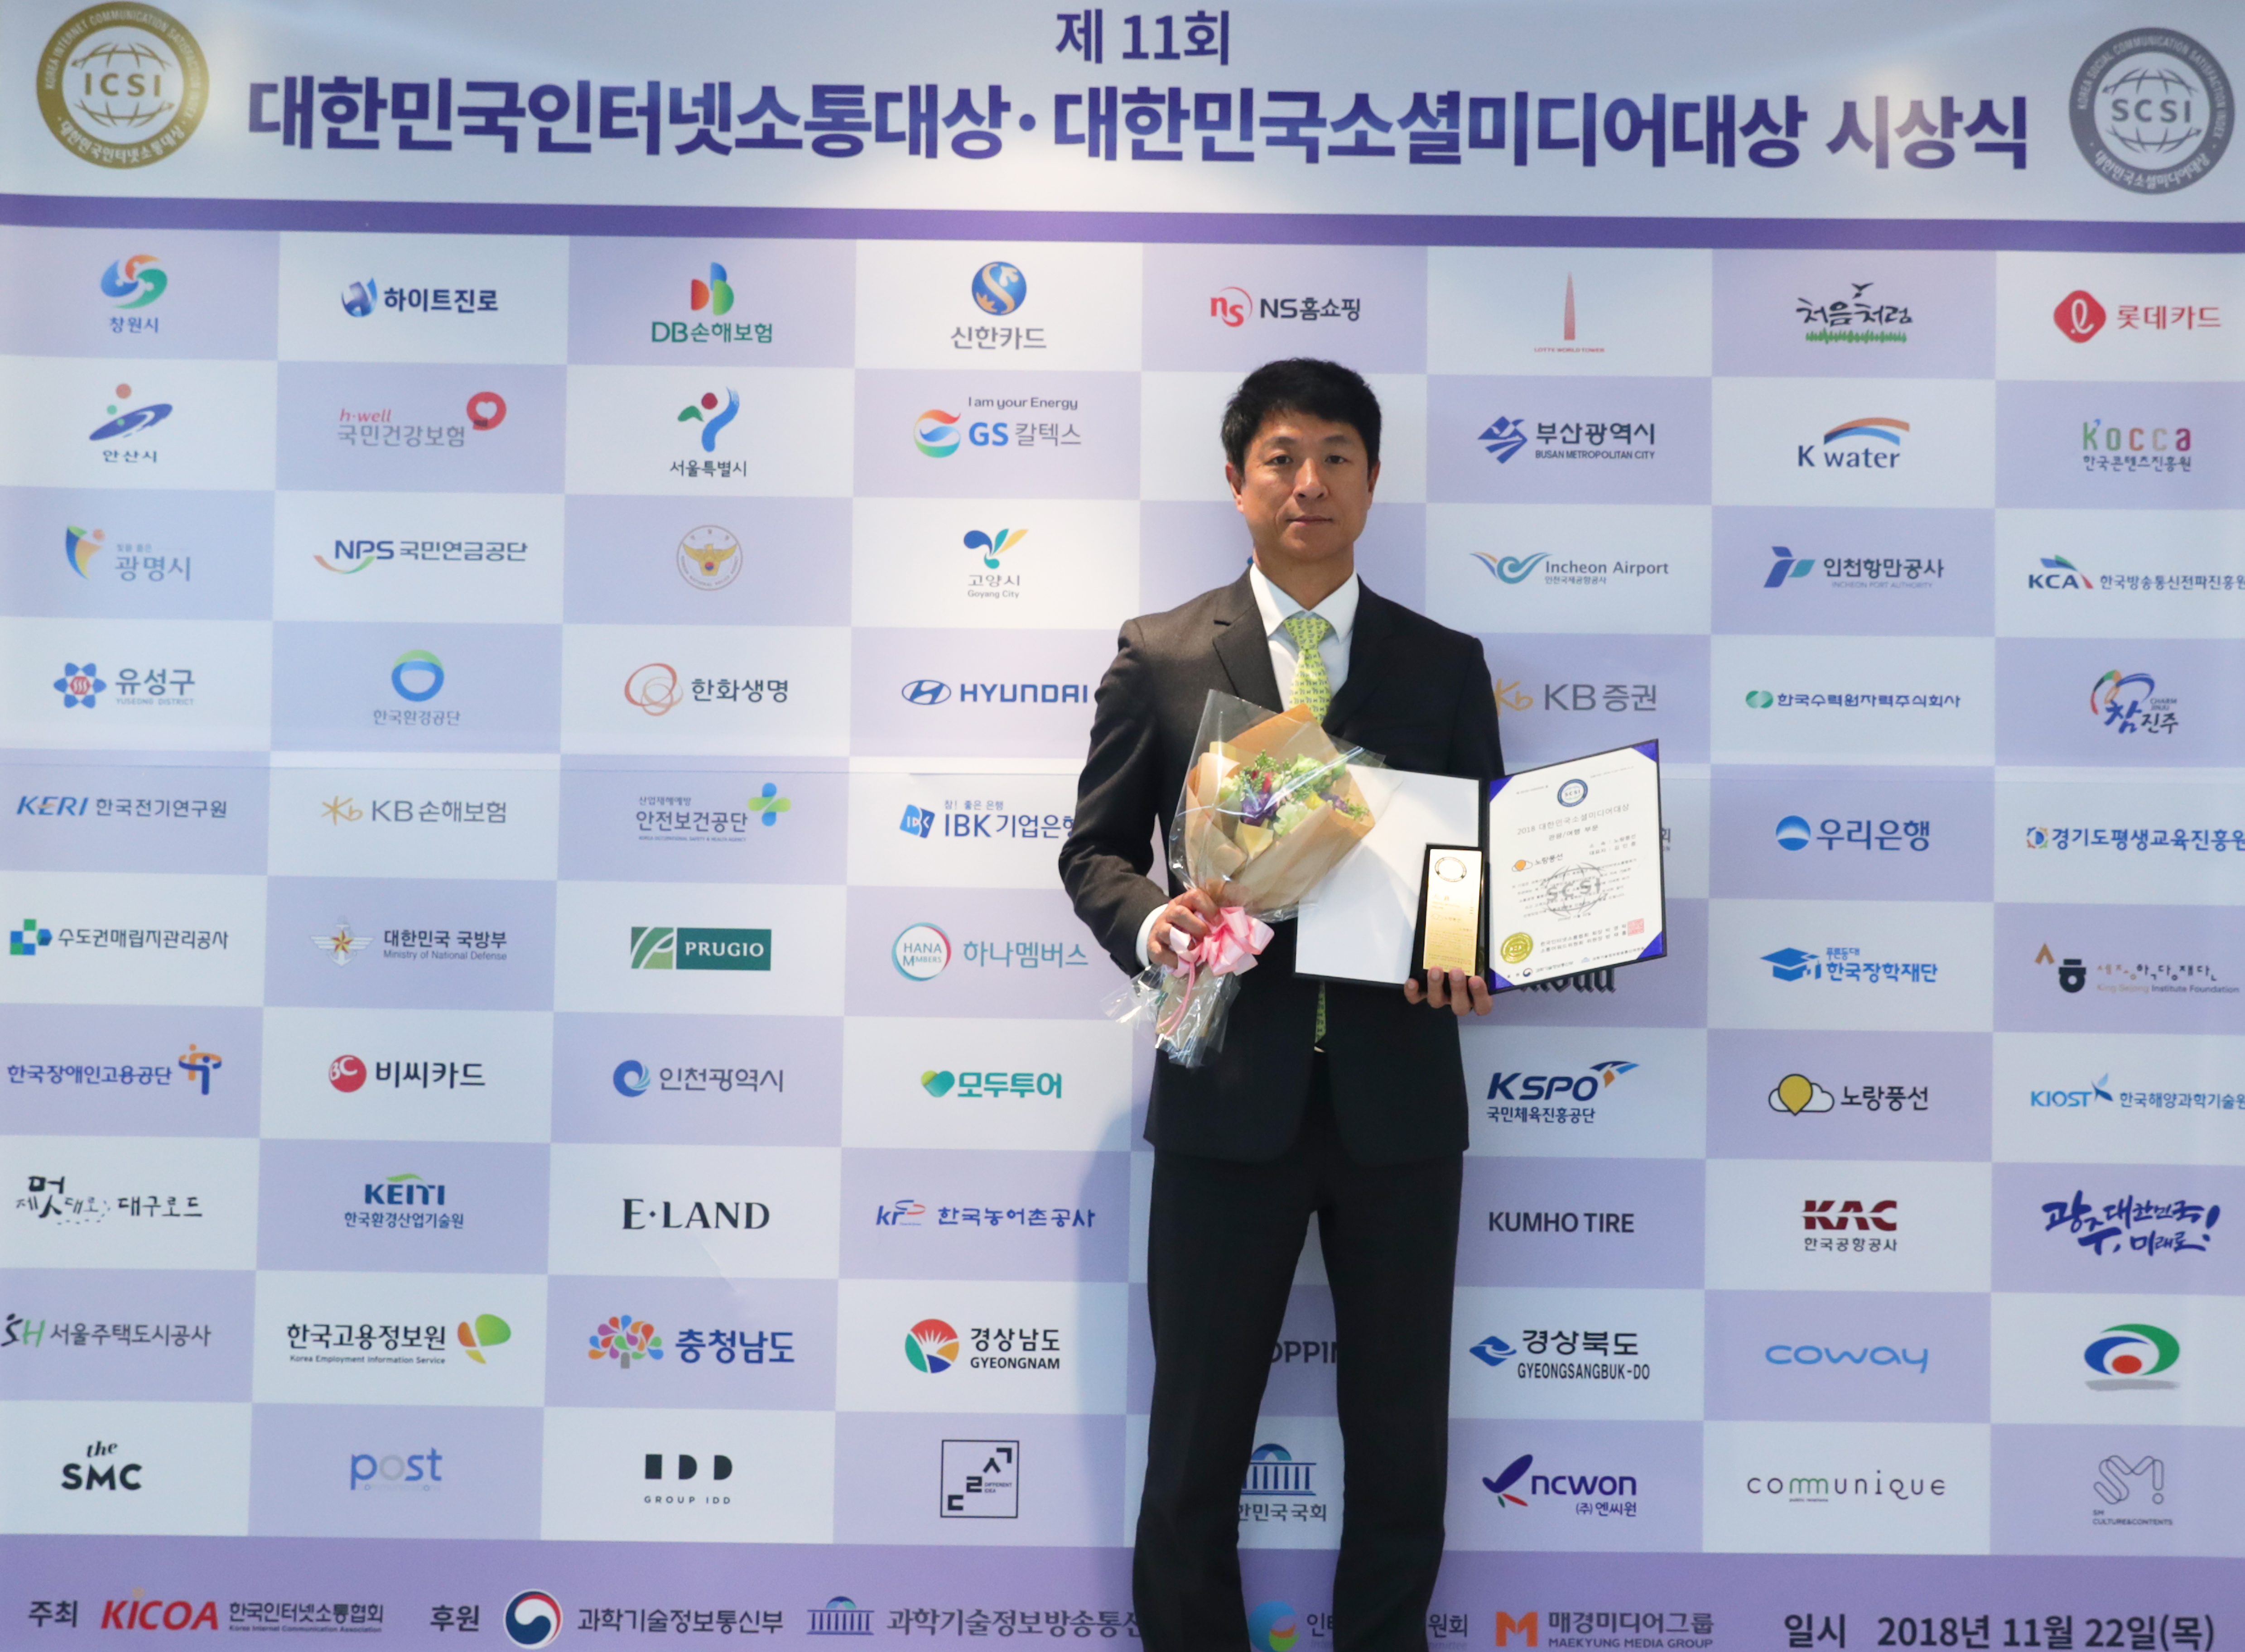 [이데일리] 노랑풍선, ‘2018 대한민국 소셜미디어 대상’ 대상 수상